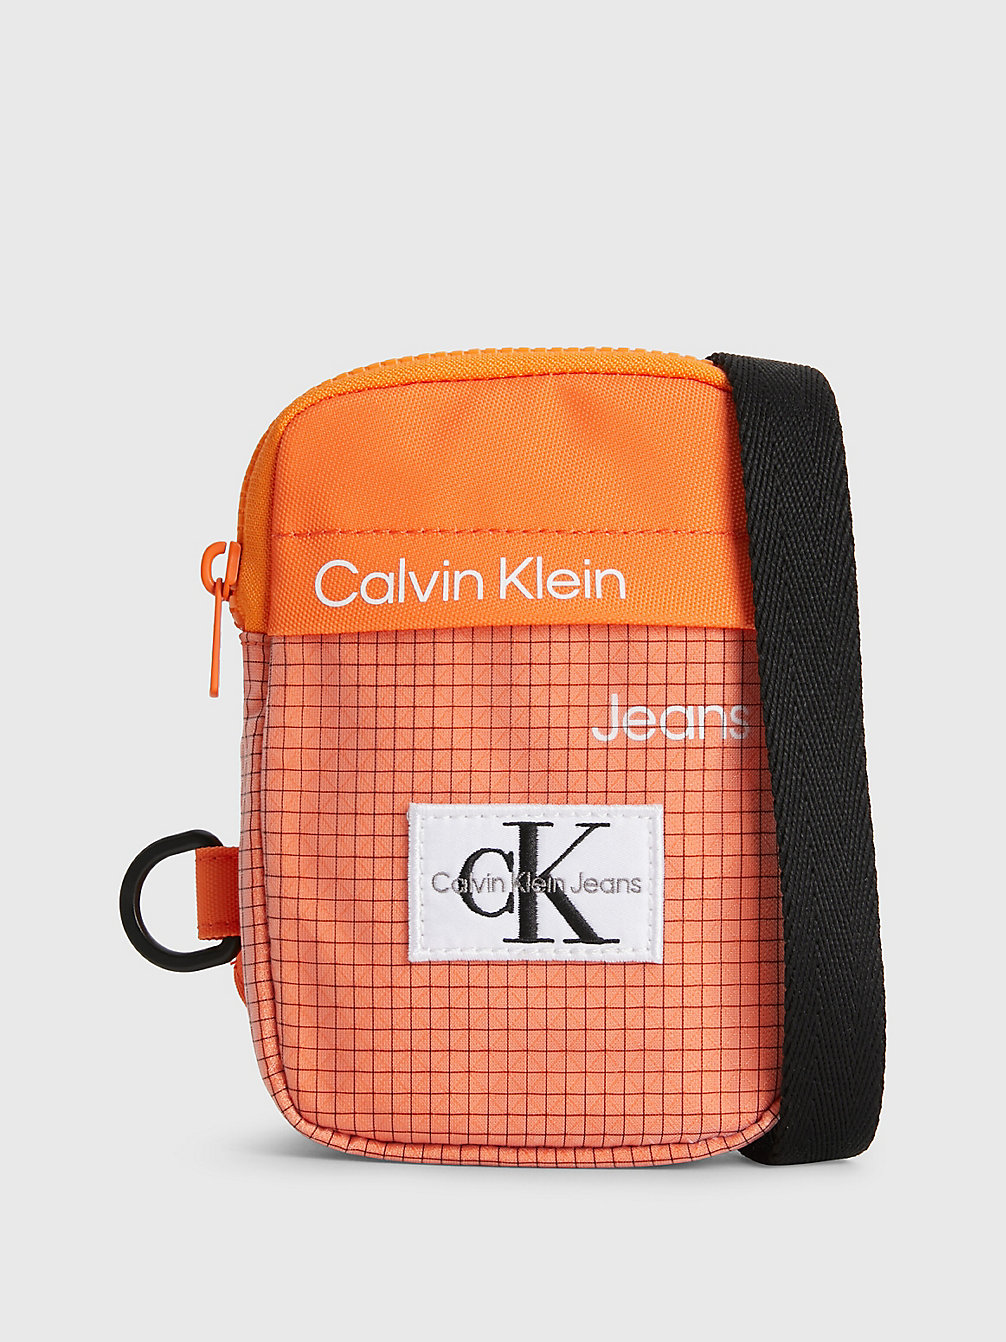 VIBRANT ORANGE Crossover-Bag Für Kids Mit Logo undefined kids unisex Calvin Klein